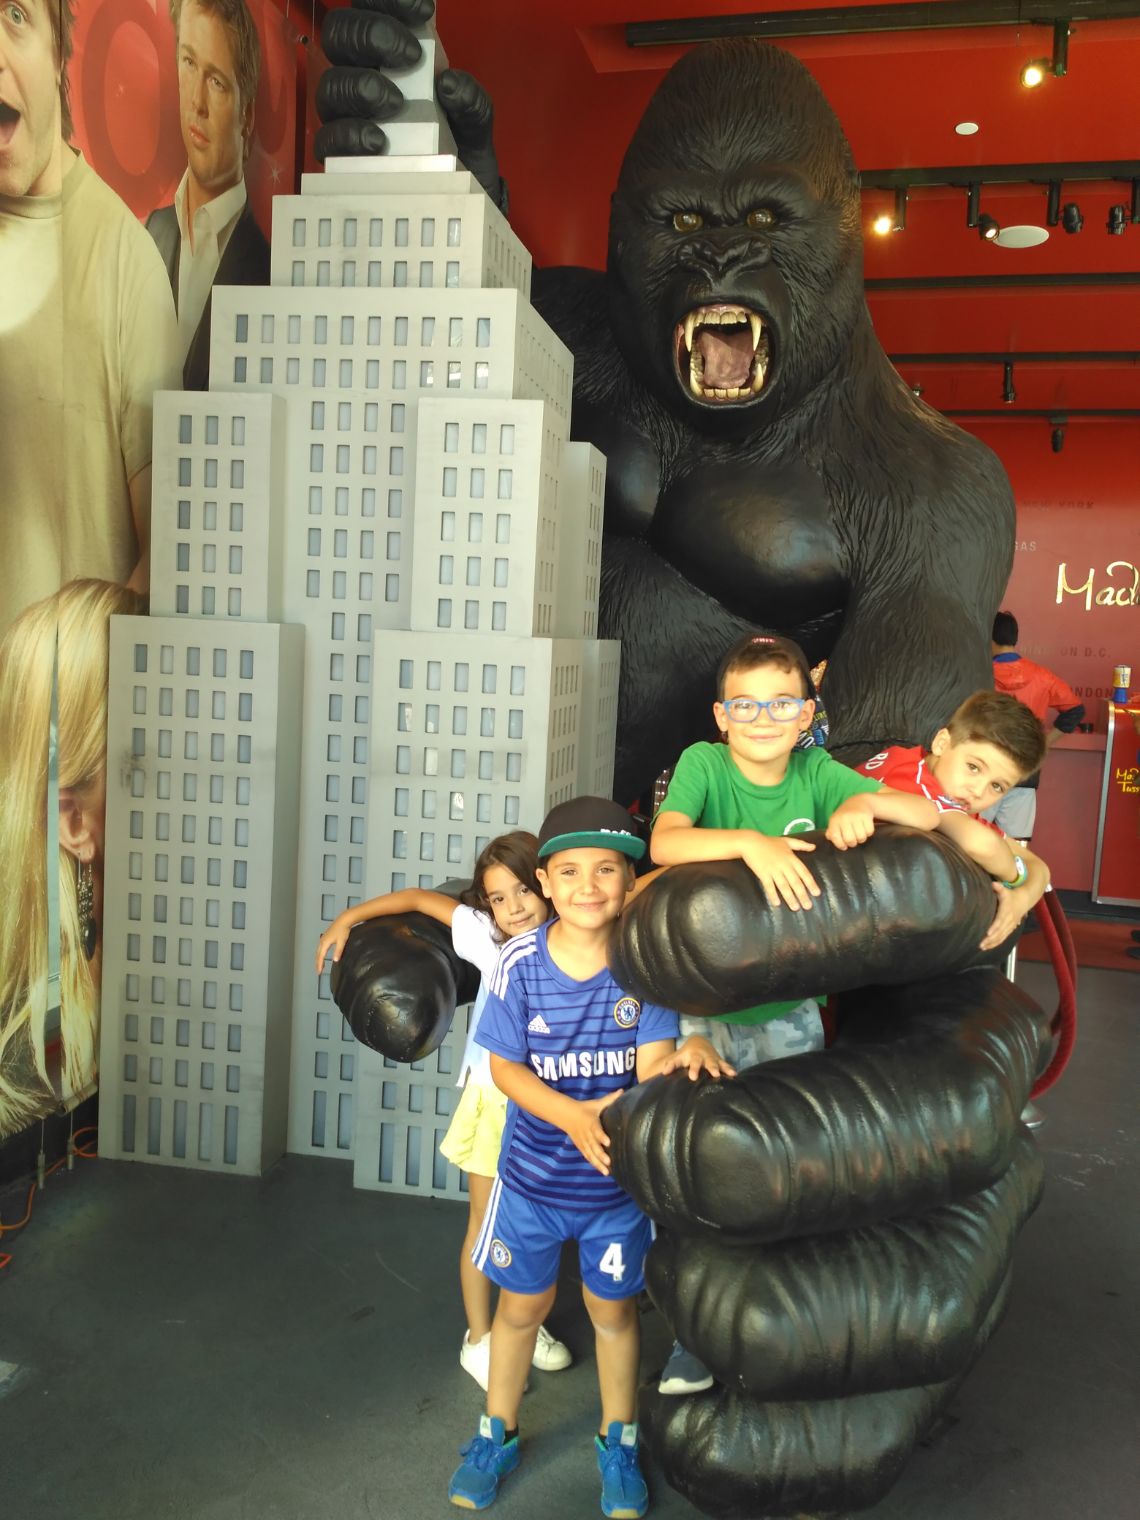 Paseo de la fama en Hollywood o Walk of Fame. Recreación de la famosa escena de la película de King Kong.